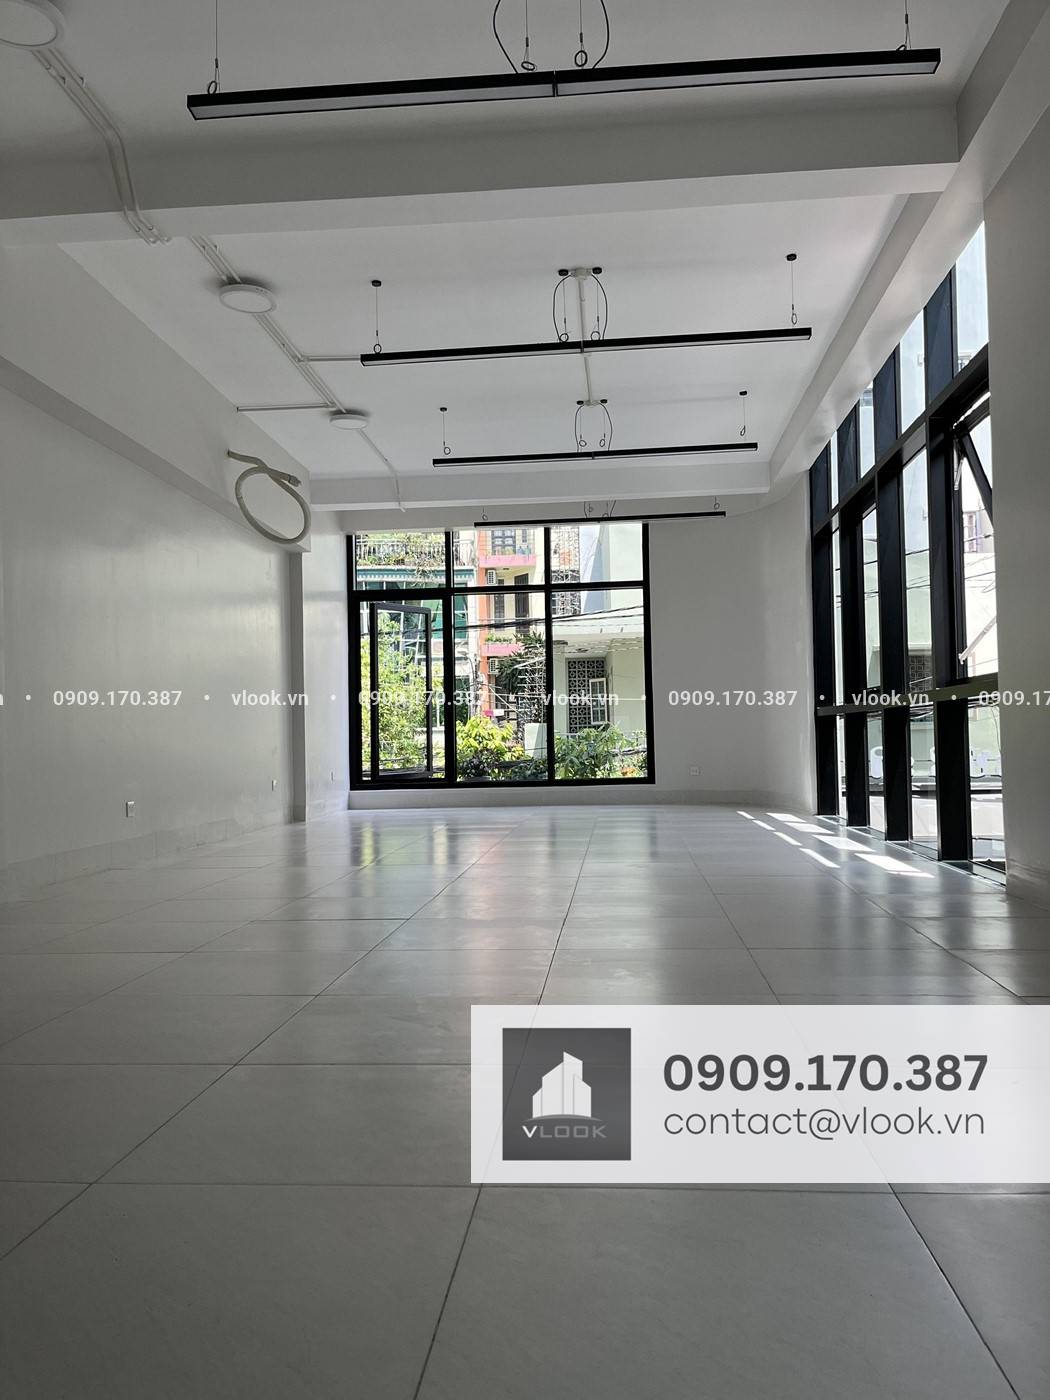 Cao ốc văn phòng cho thuê tòa nhà 12/18 Đào Duy Anh, Phường 9, Quận Phú Nhuận, TPHCM - vlook.vn - 0909 170 387